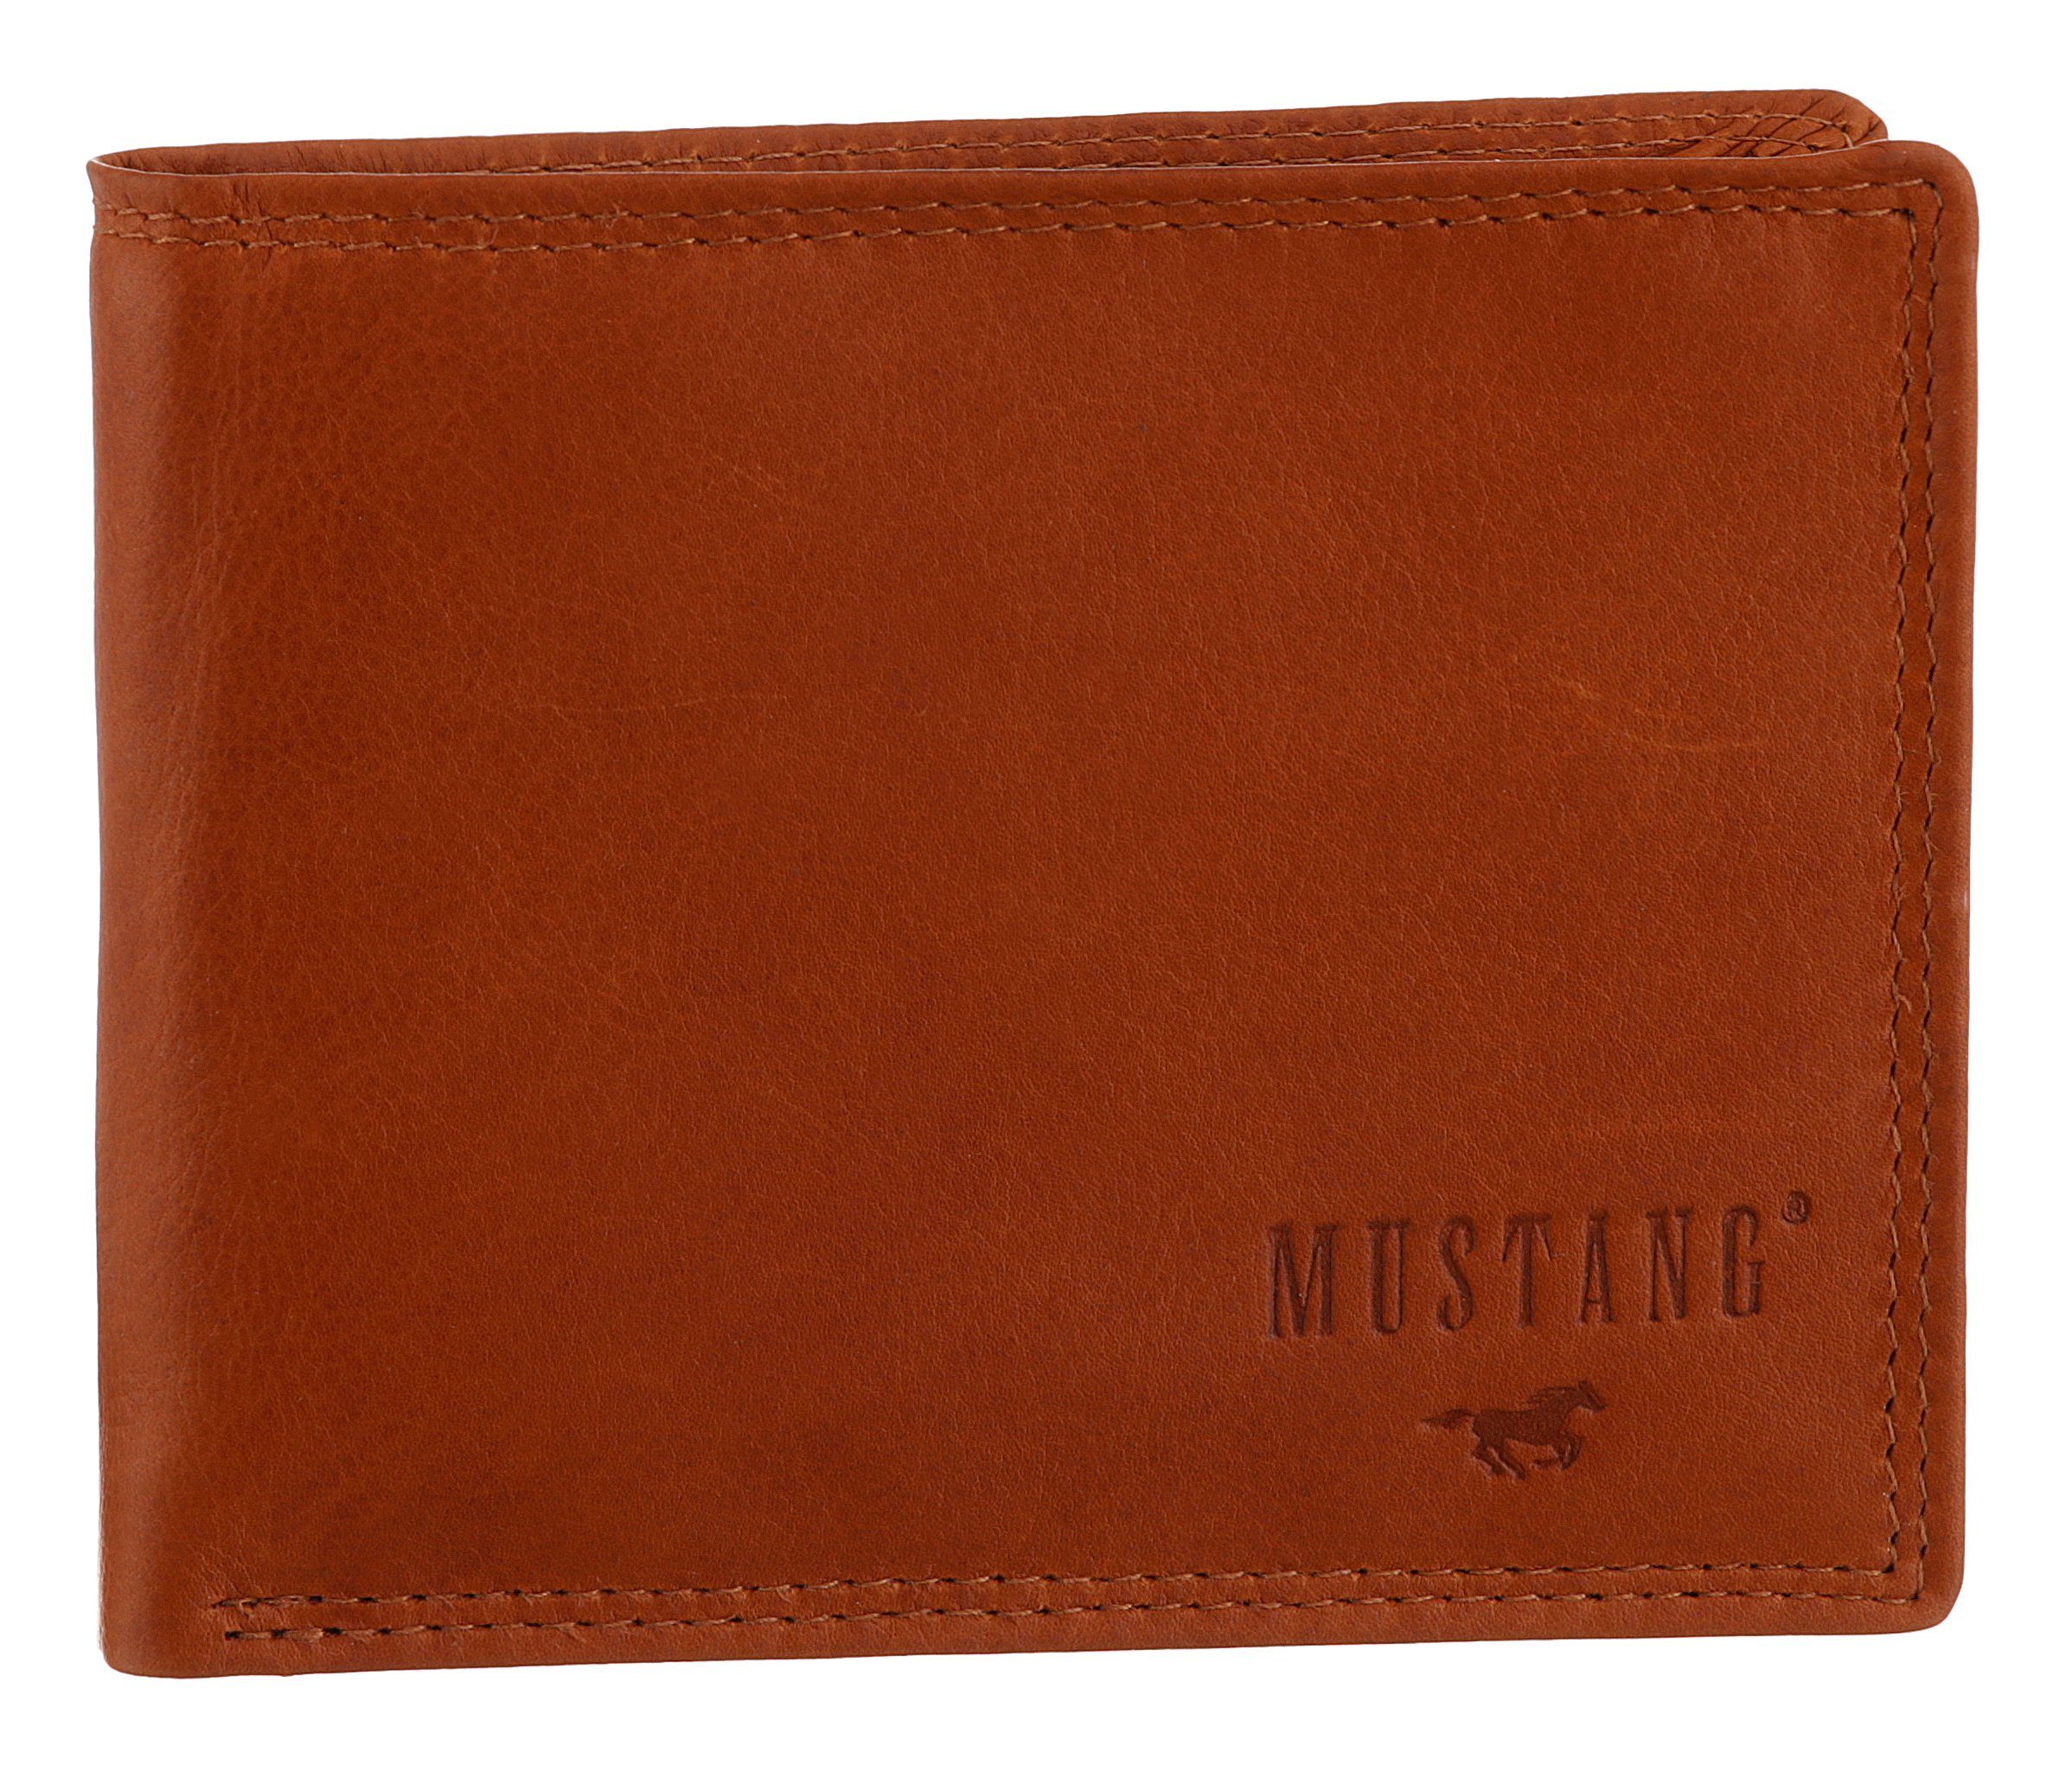 Udine Geldbörse wallet MUSTANG side RFID-Schutz mit leather opening,